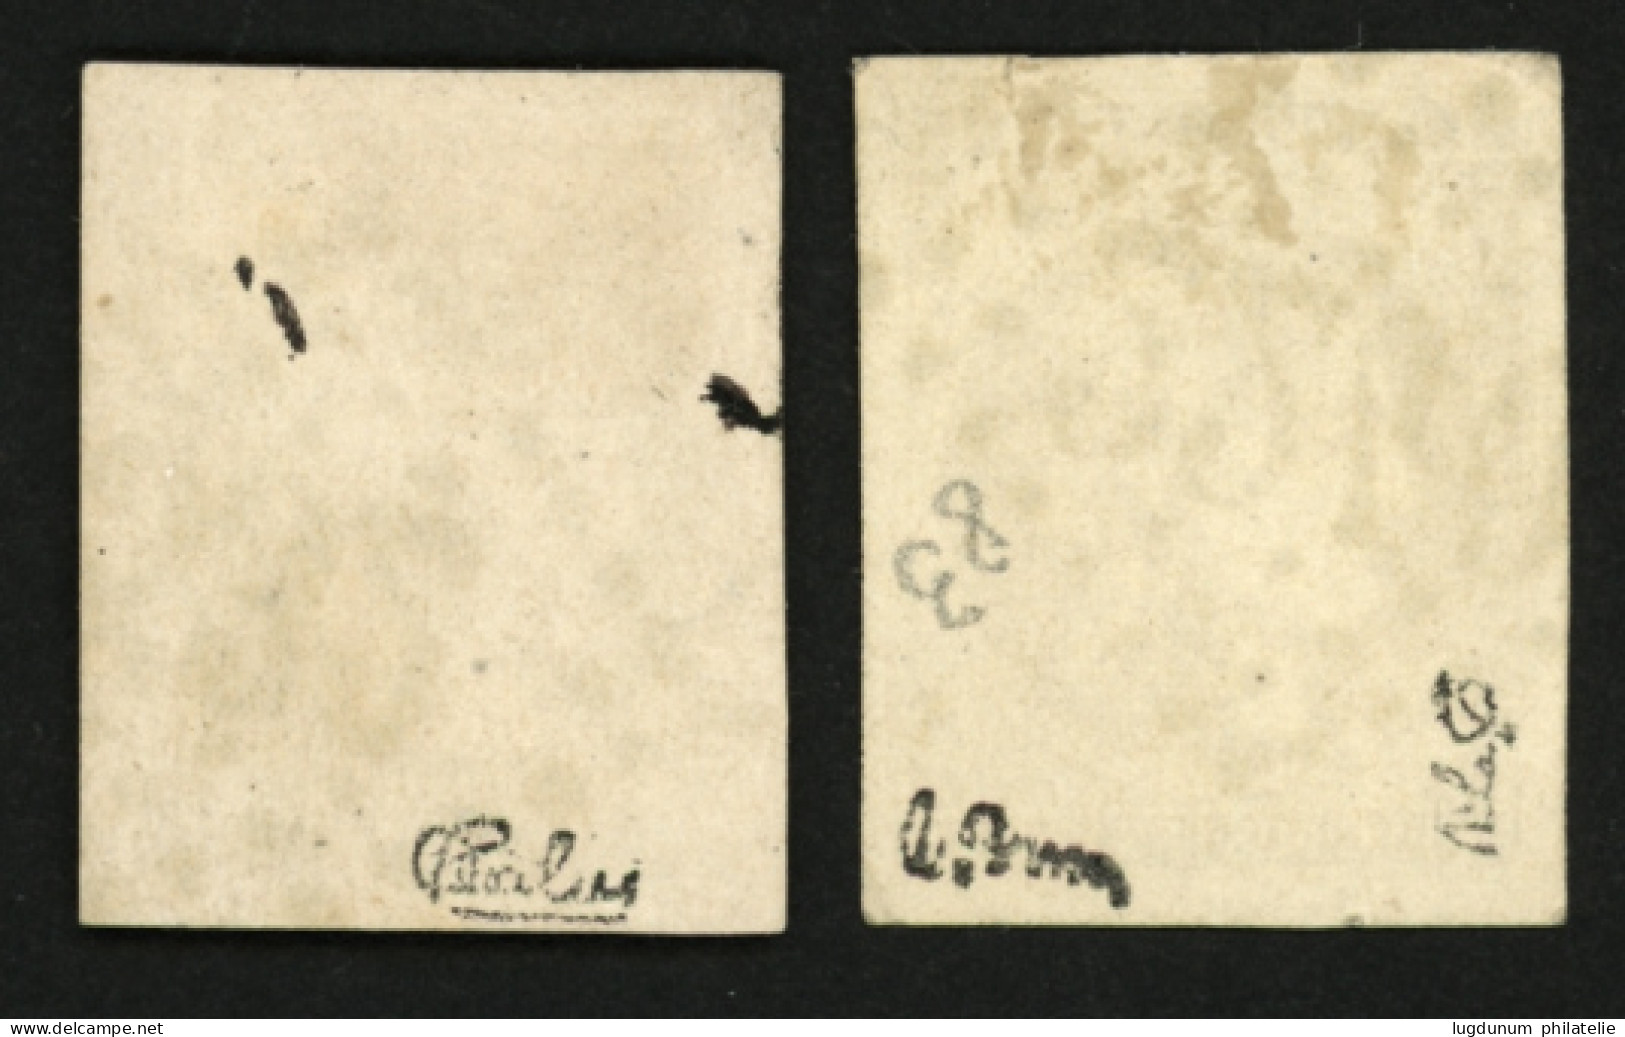 10c BORDEAUX (n°43) 2 Superbes Exemplaires Avec Nuances Différentes. Signé CALVES Et BRUN. TTB. - 1870 Ausgabe Bordeaux